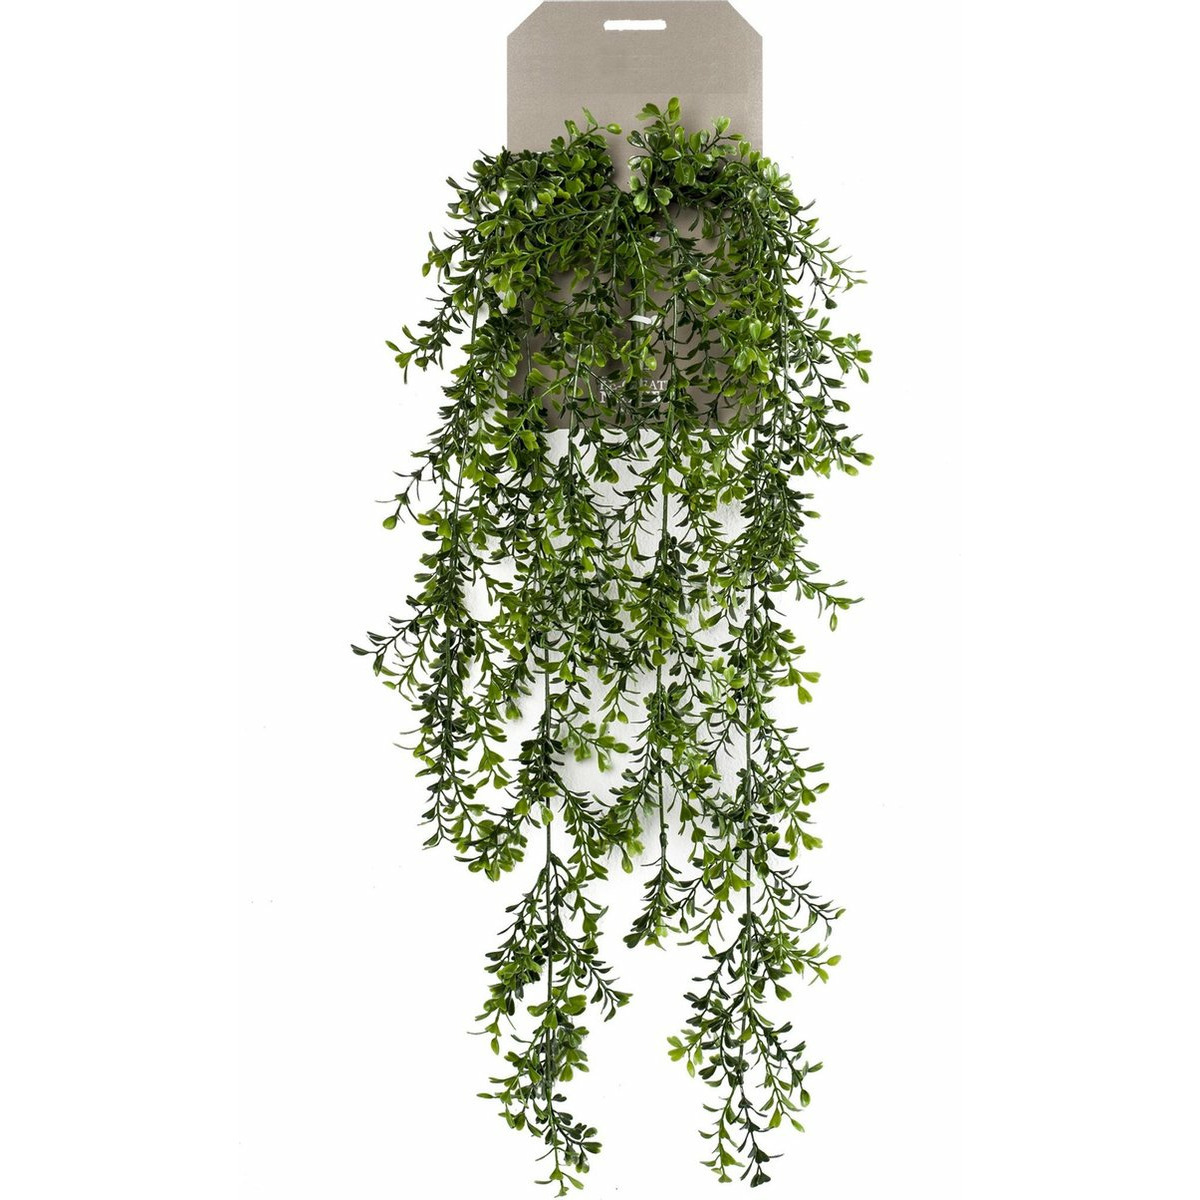 Emerald kunstplant-hangplant Buxus groen 75 cm lang